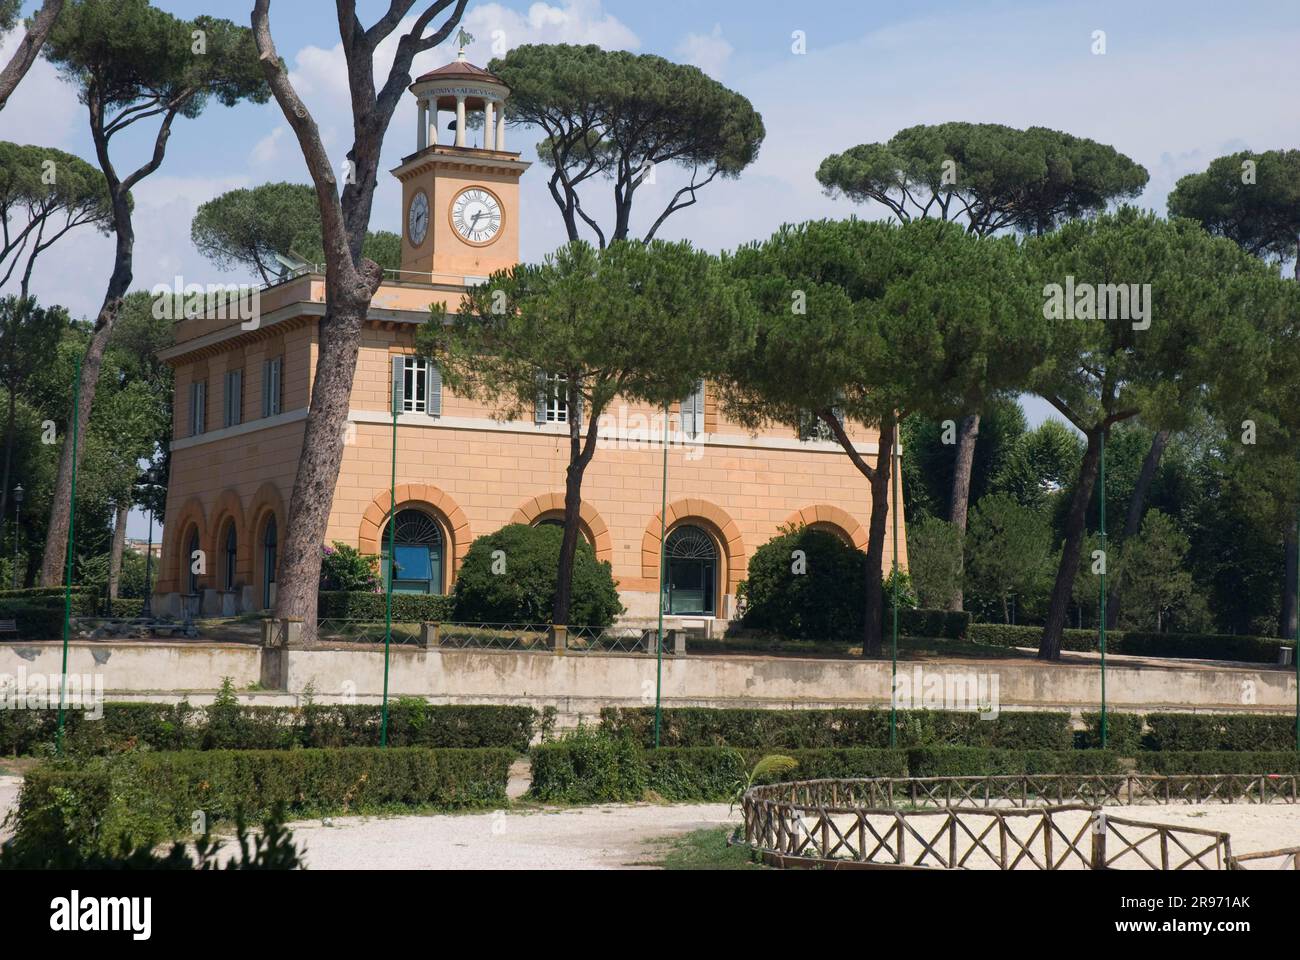 Piazza di Siena, Villa Borghese Park, Rome, Italy Stock Photo